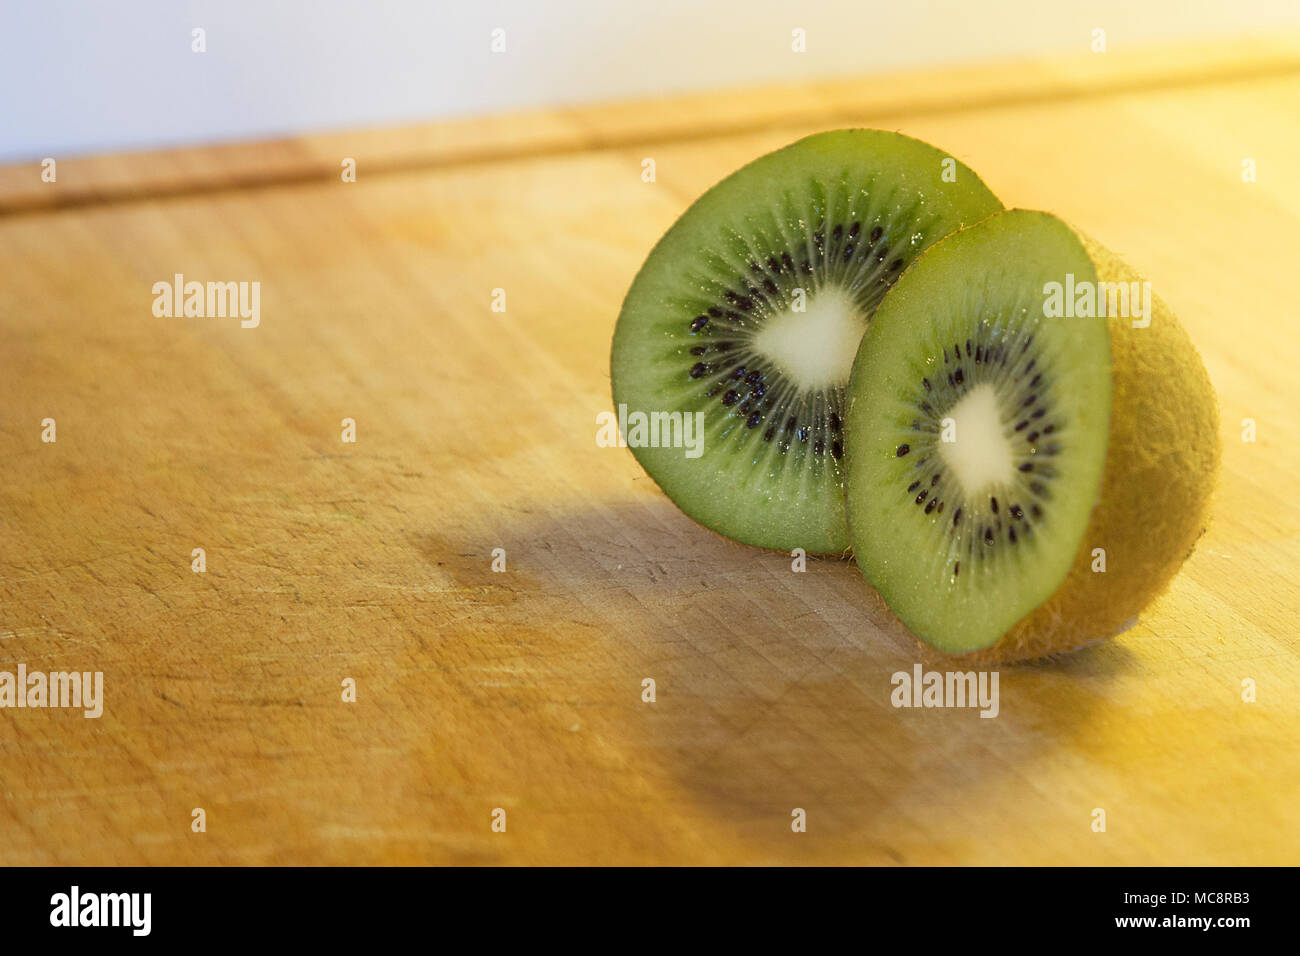 Bella e chiara immagine di kiwi Foto Stock